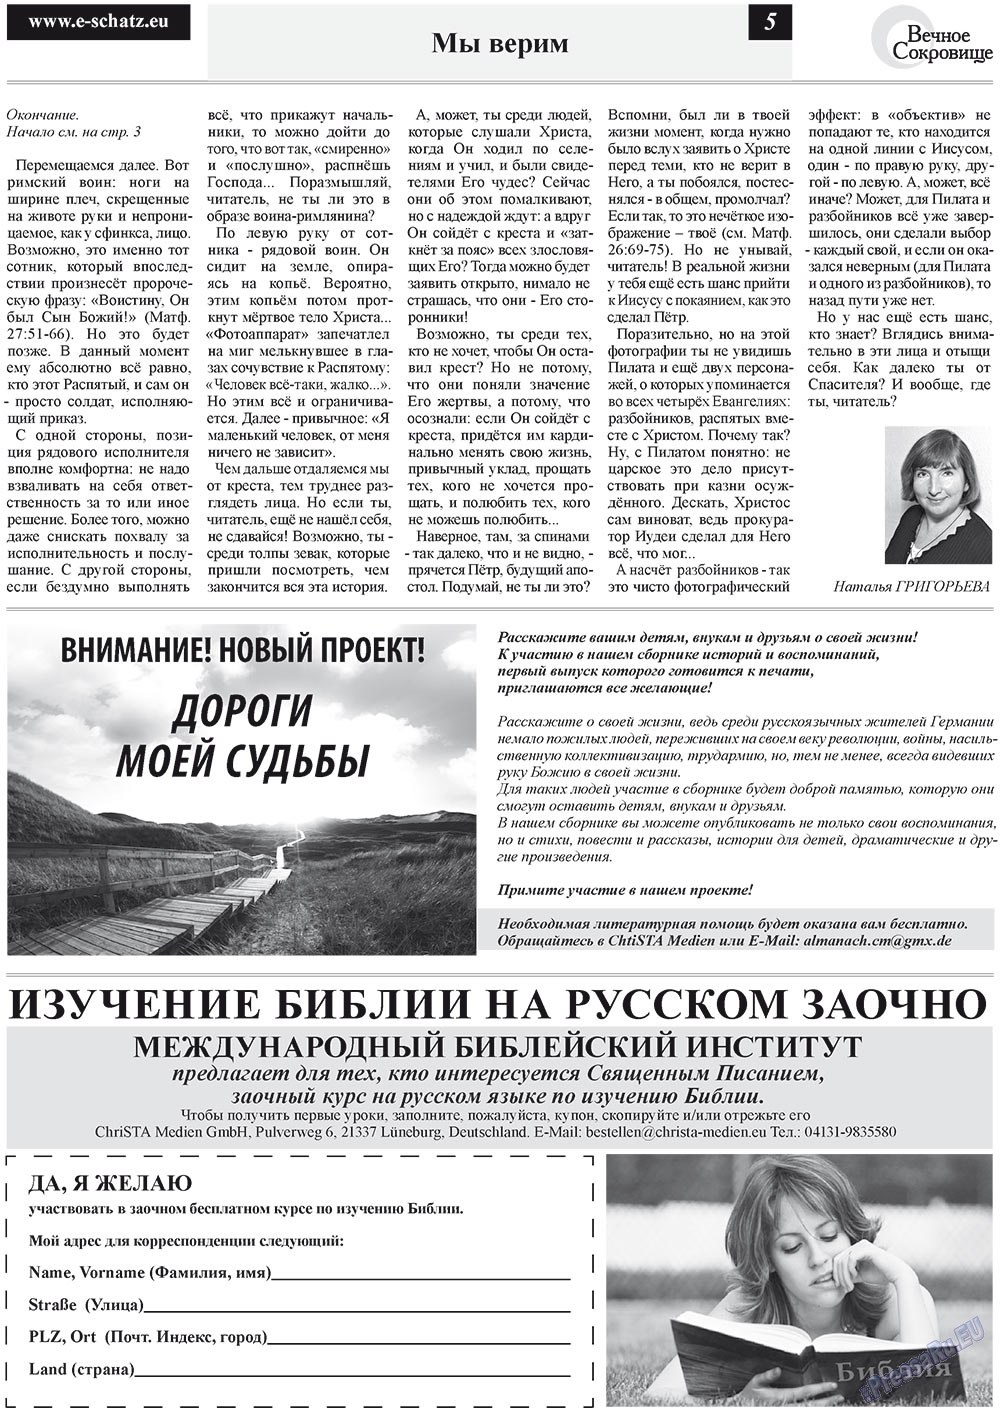 Вечное сокровище (газета). 2012 год, номер 2, стр. 5